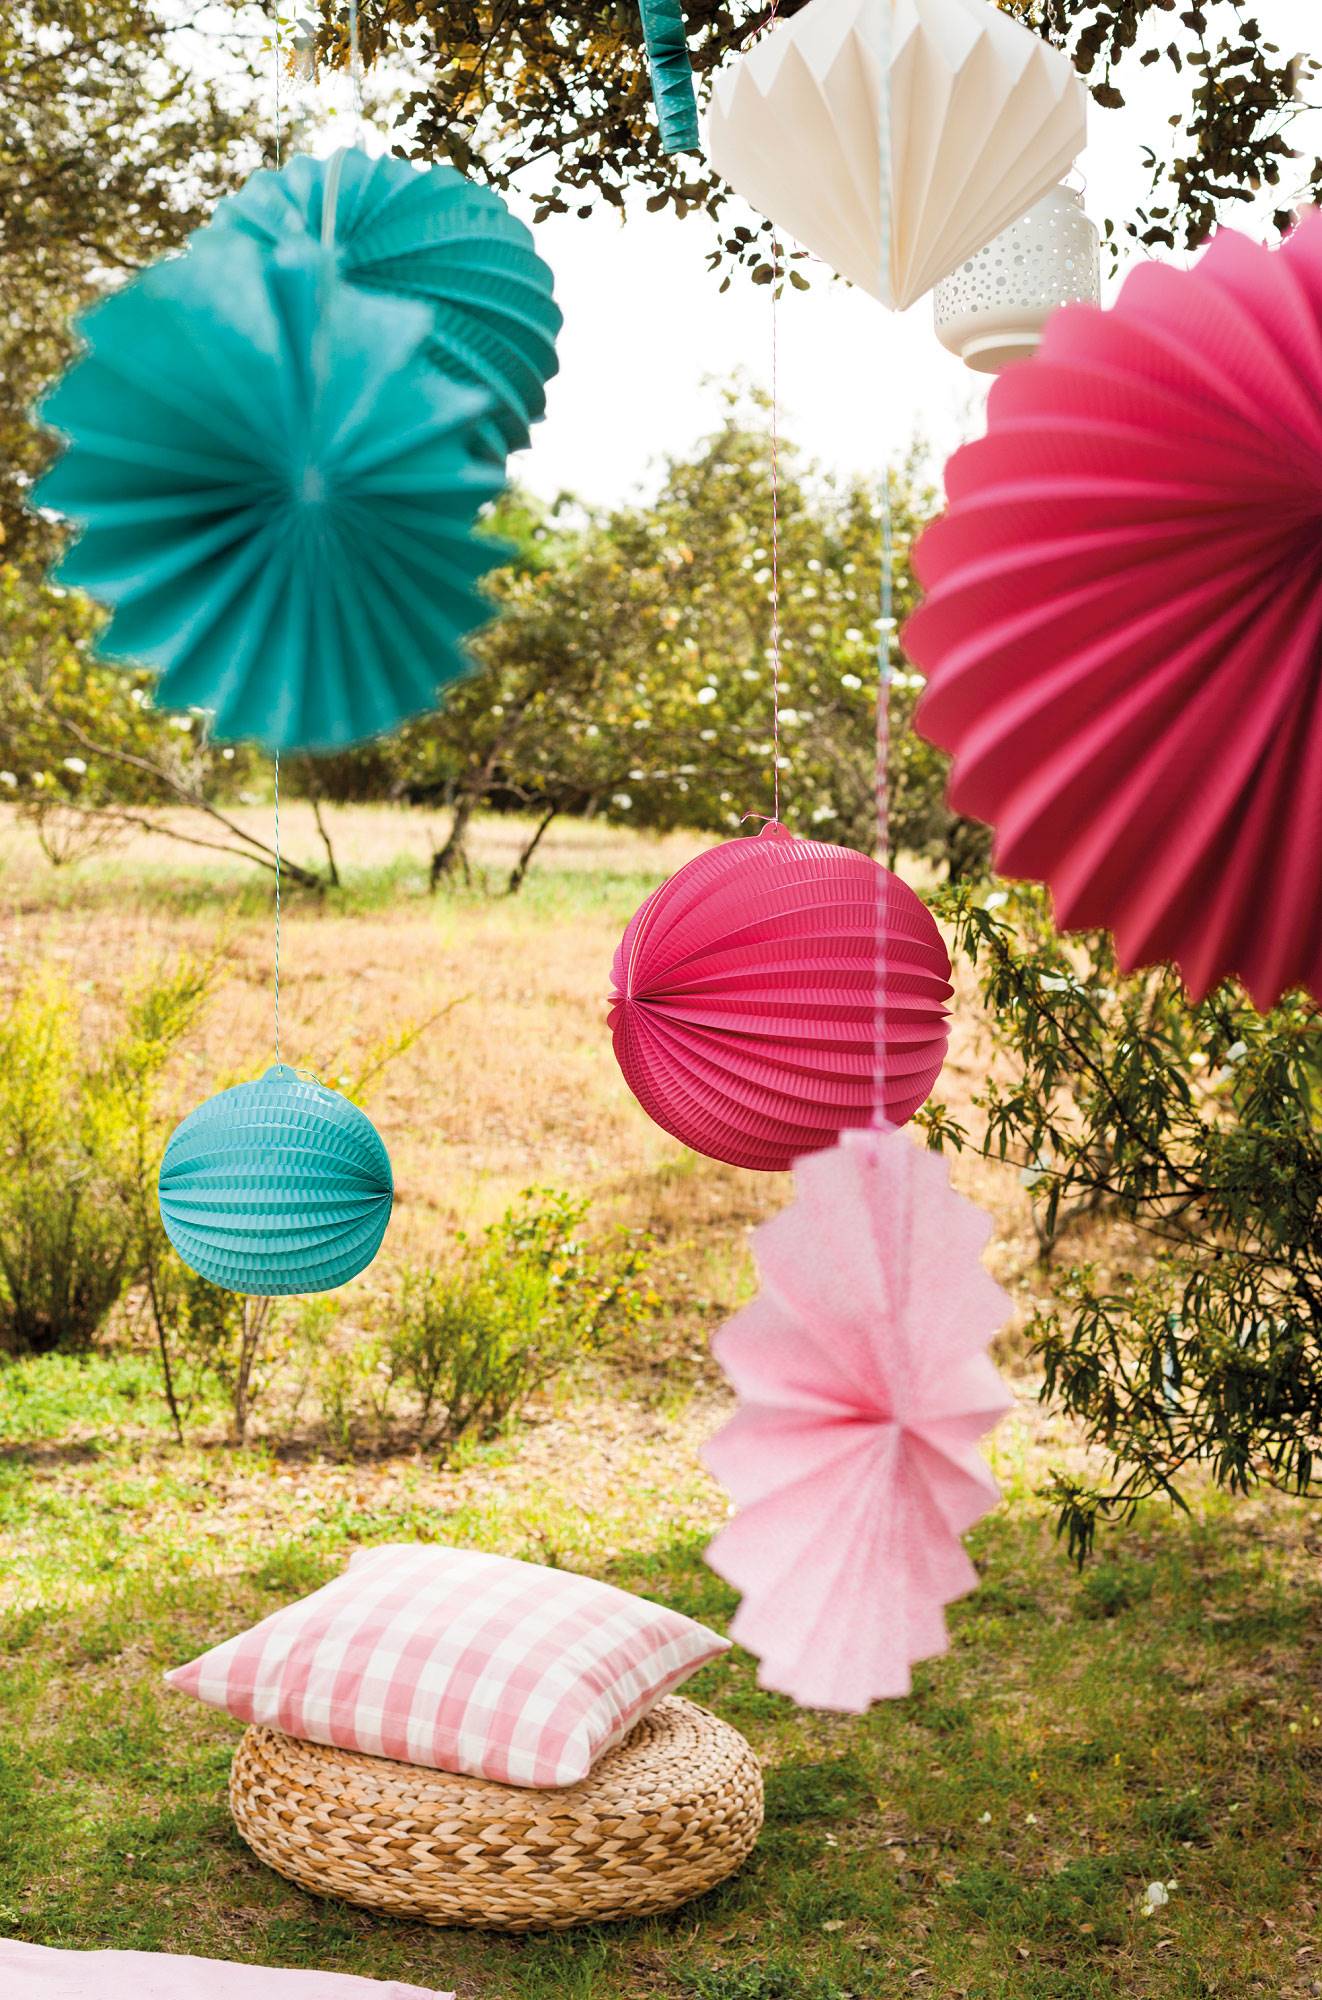 Fiesta en el jardín con adornos de papel en colores rosas y verde agua y un puff de fibras